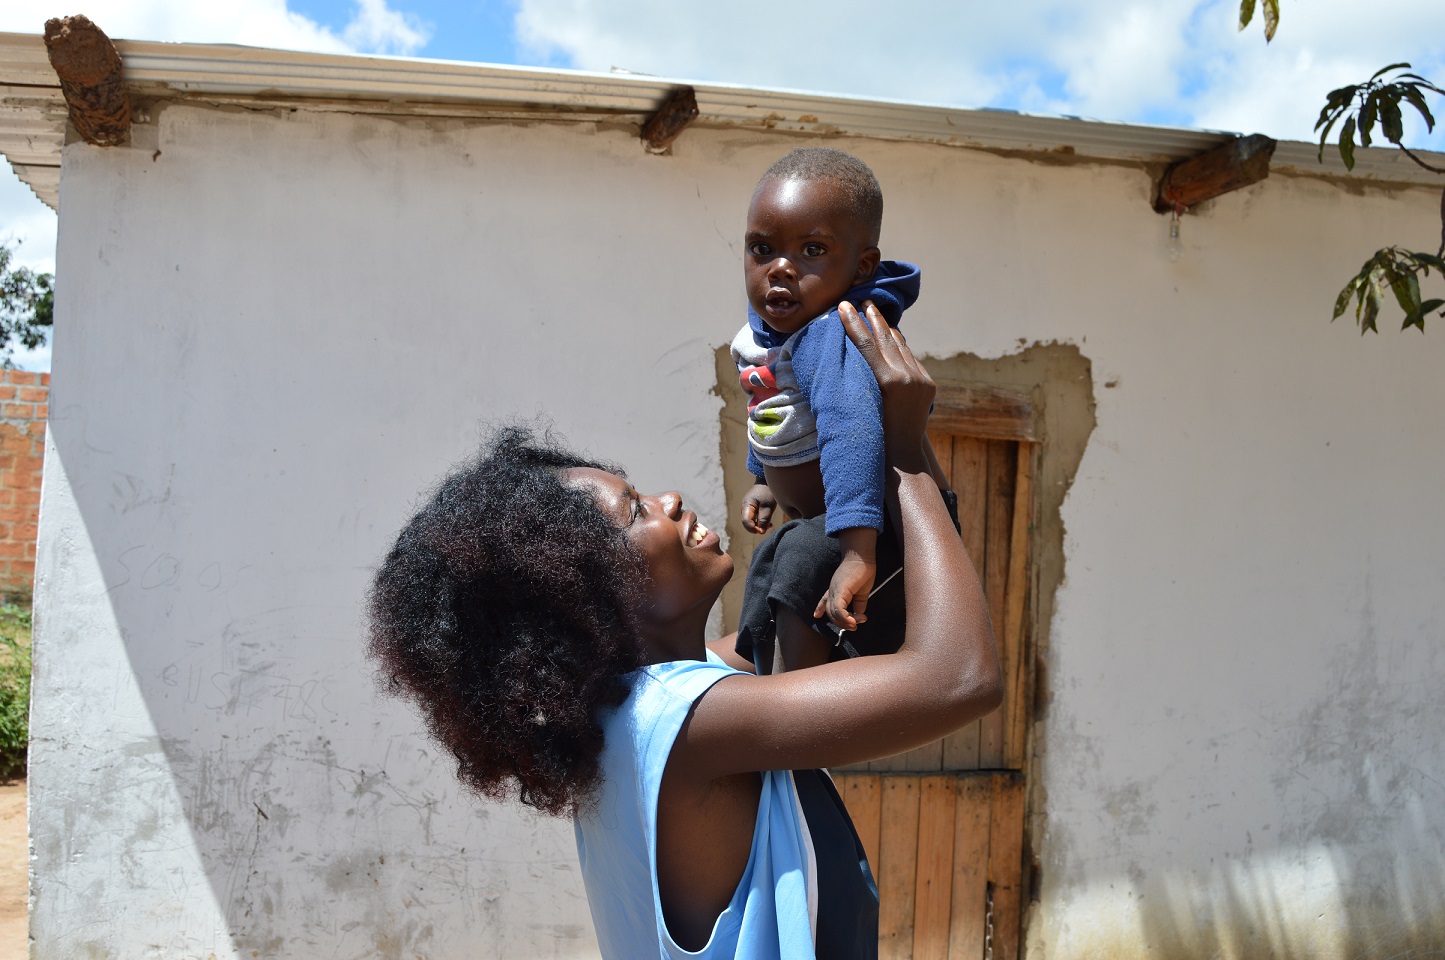 Nuori sambialainen hymyilevä nainen nostaa käsillään pientä lasta ilmaan.